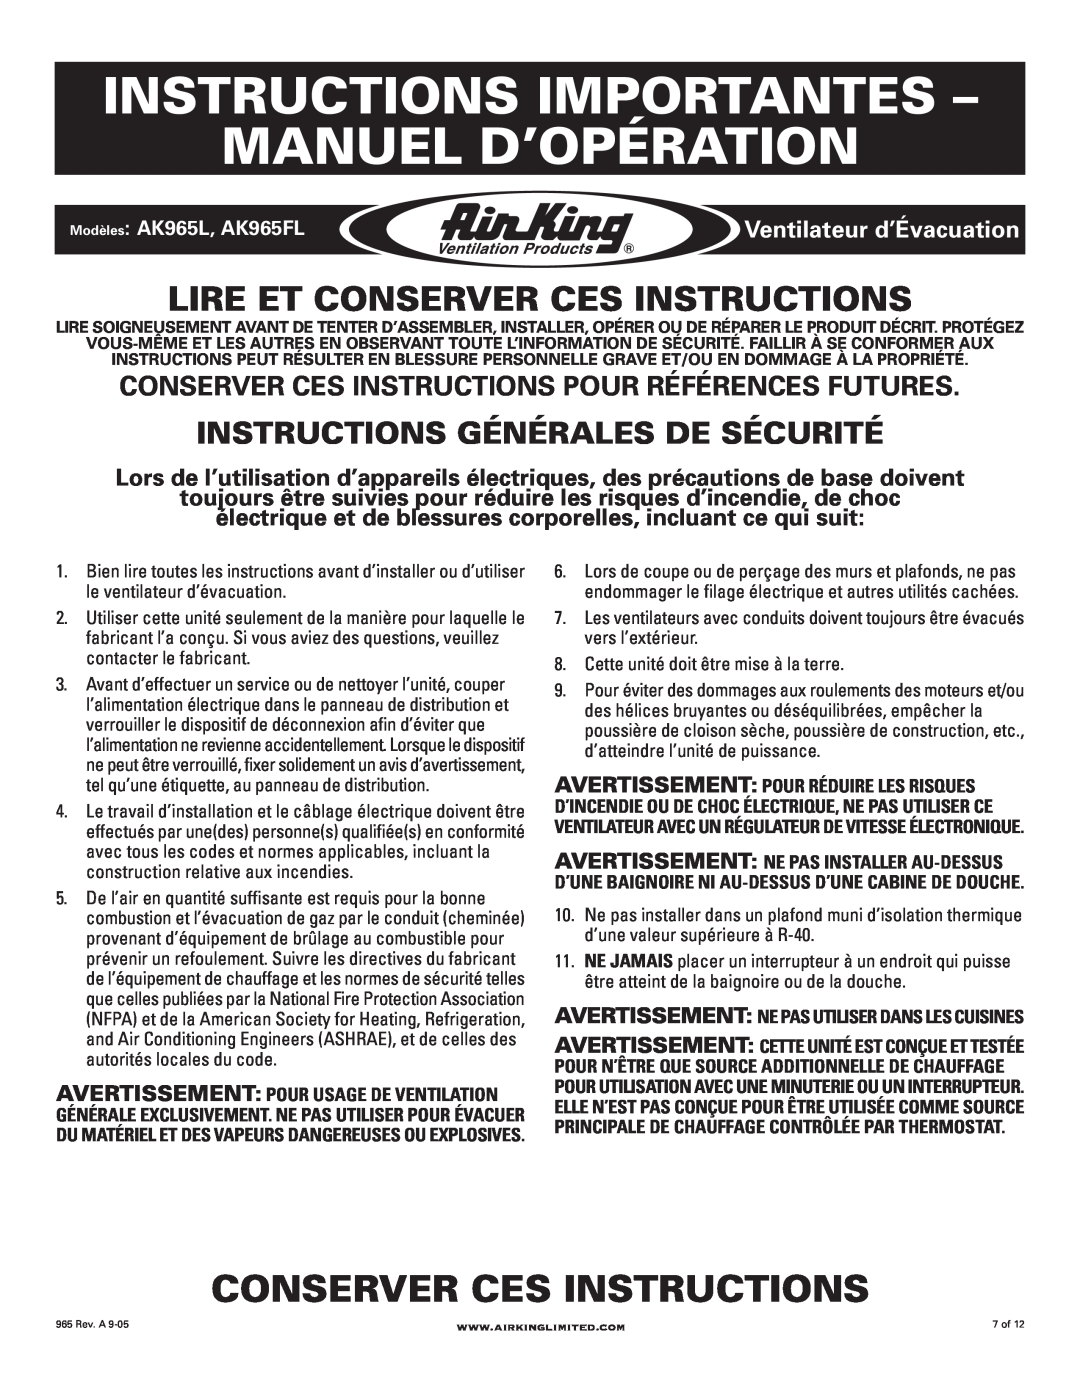 Air King AK965L, AK965FL manual Instructions Importantes - Manuel D’Opération, Conserver Ces Instructions 